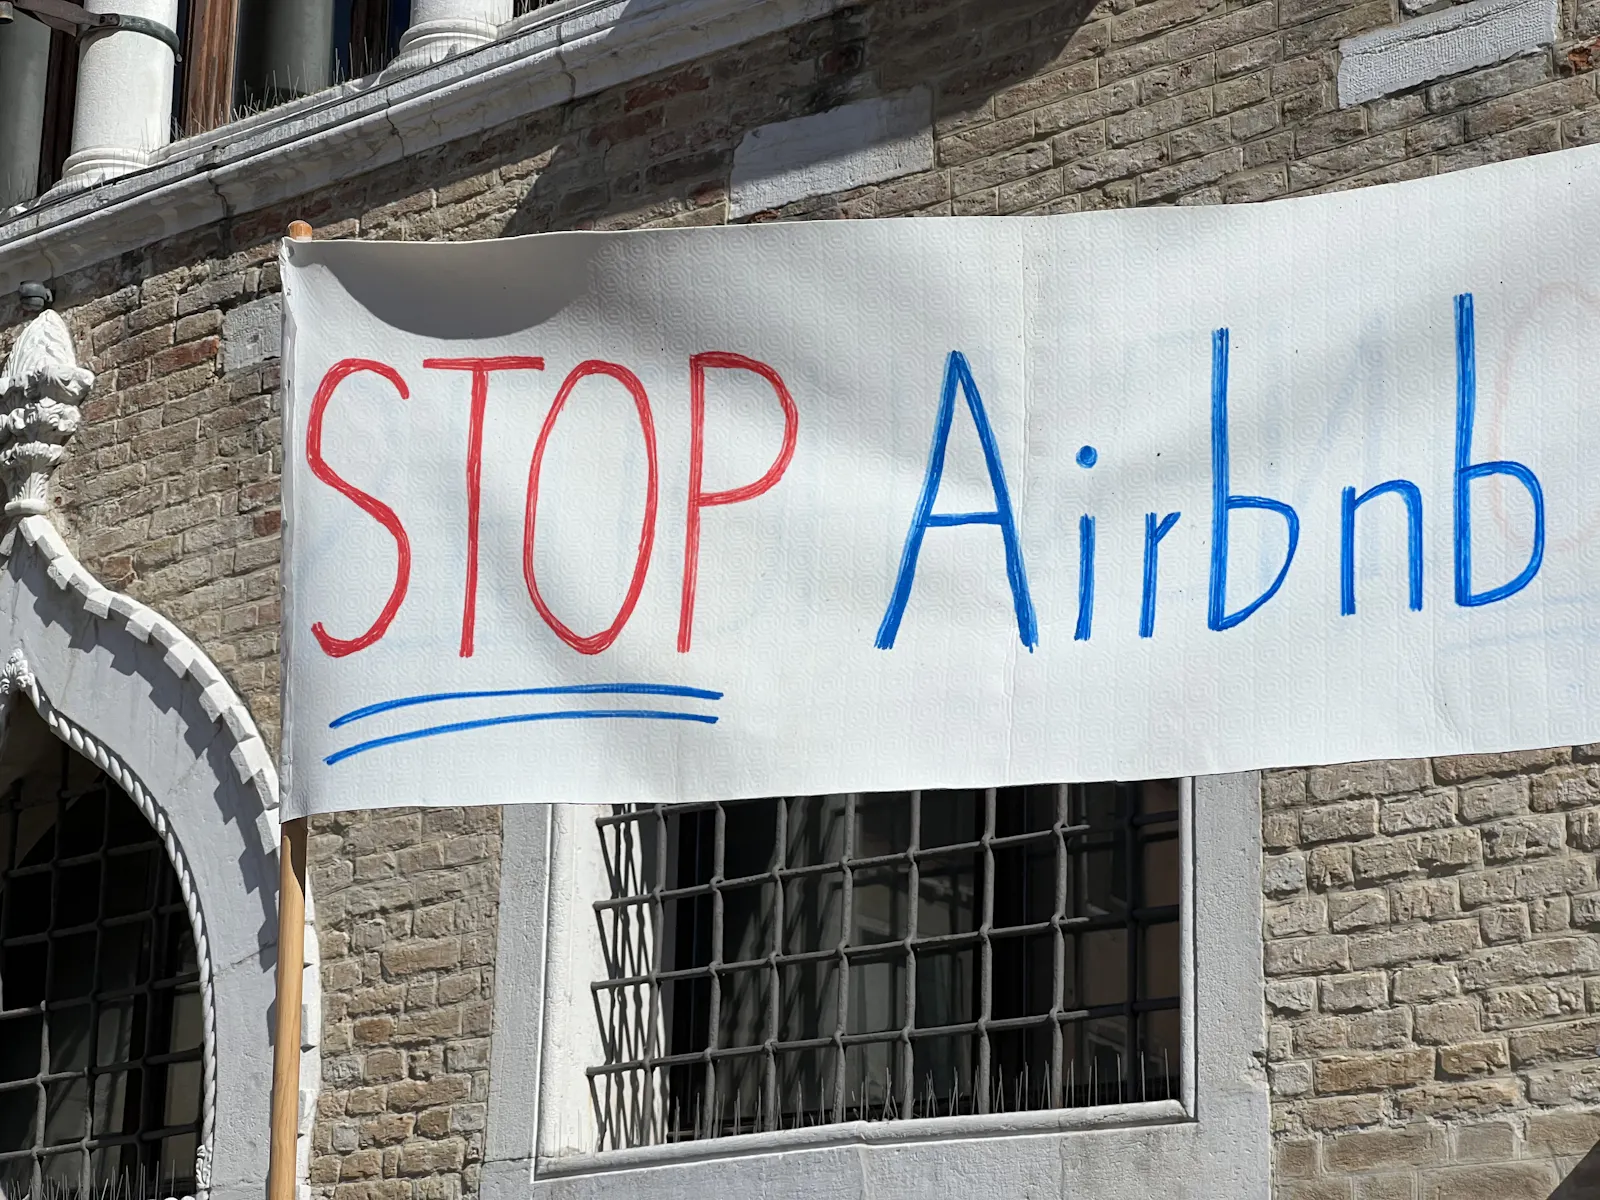 Stop-Airbnb steht auf einem Plakat